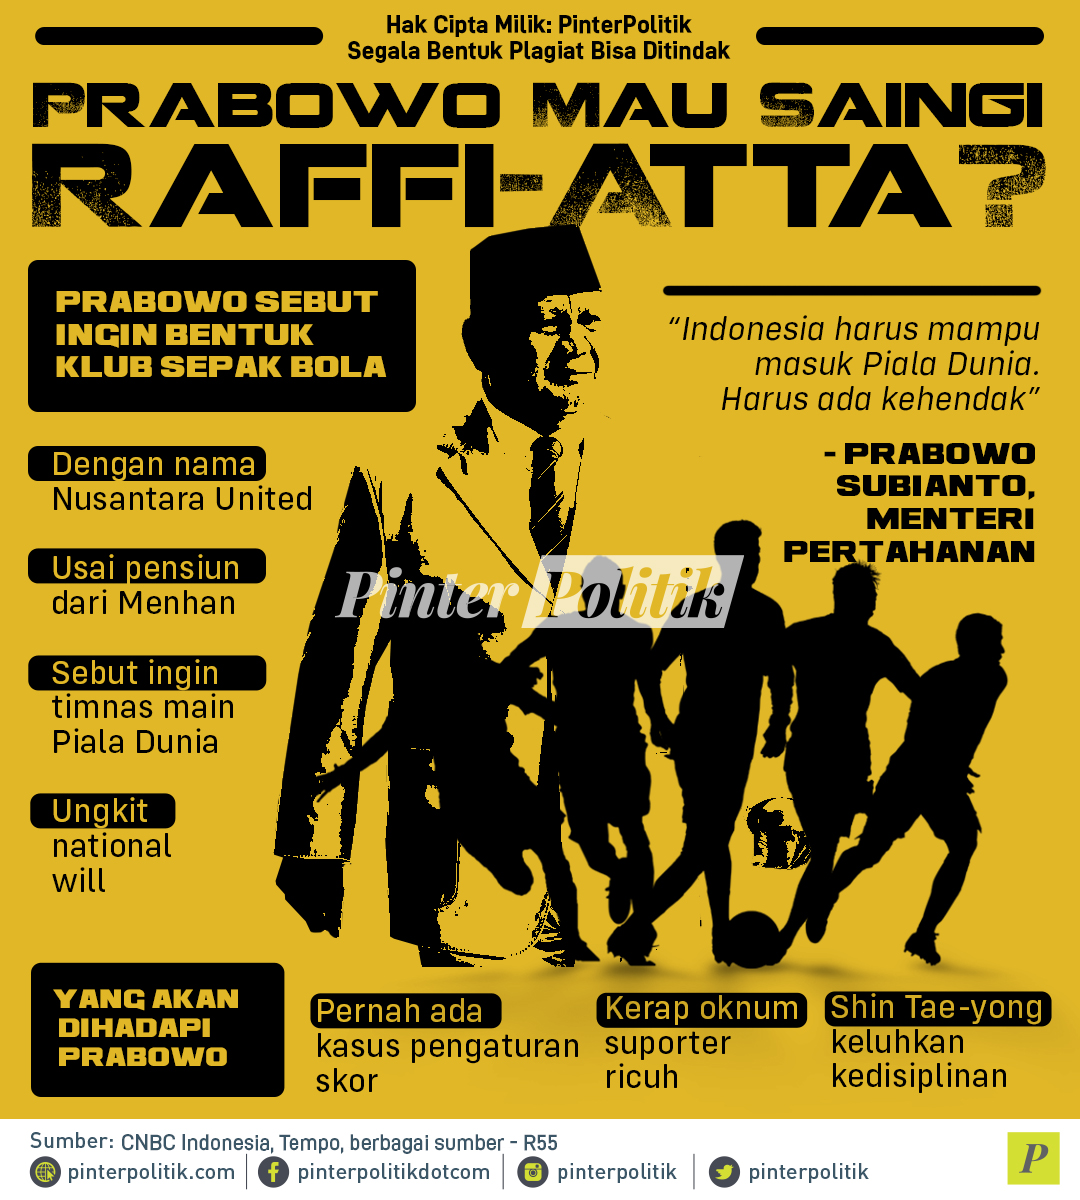 Prabowo Mau Saingi Raffi Atta Nusantara United